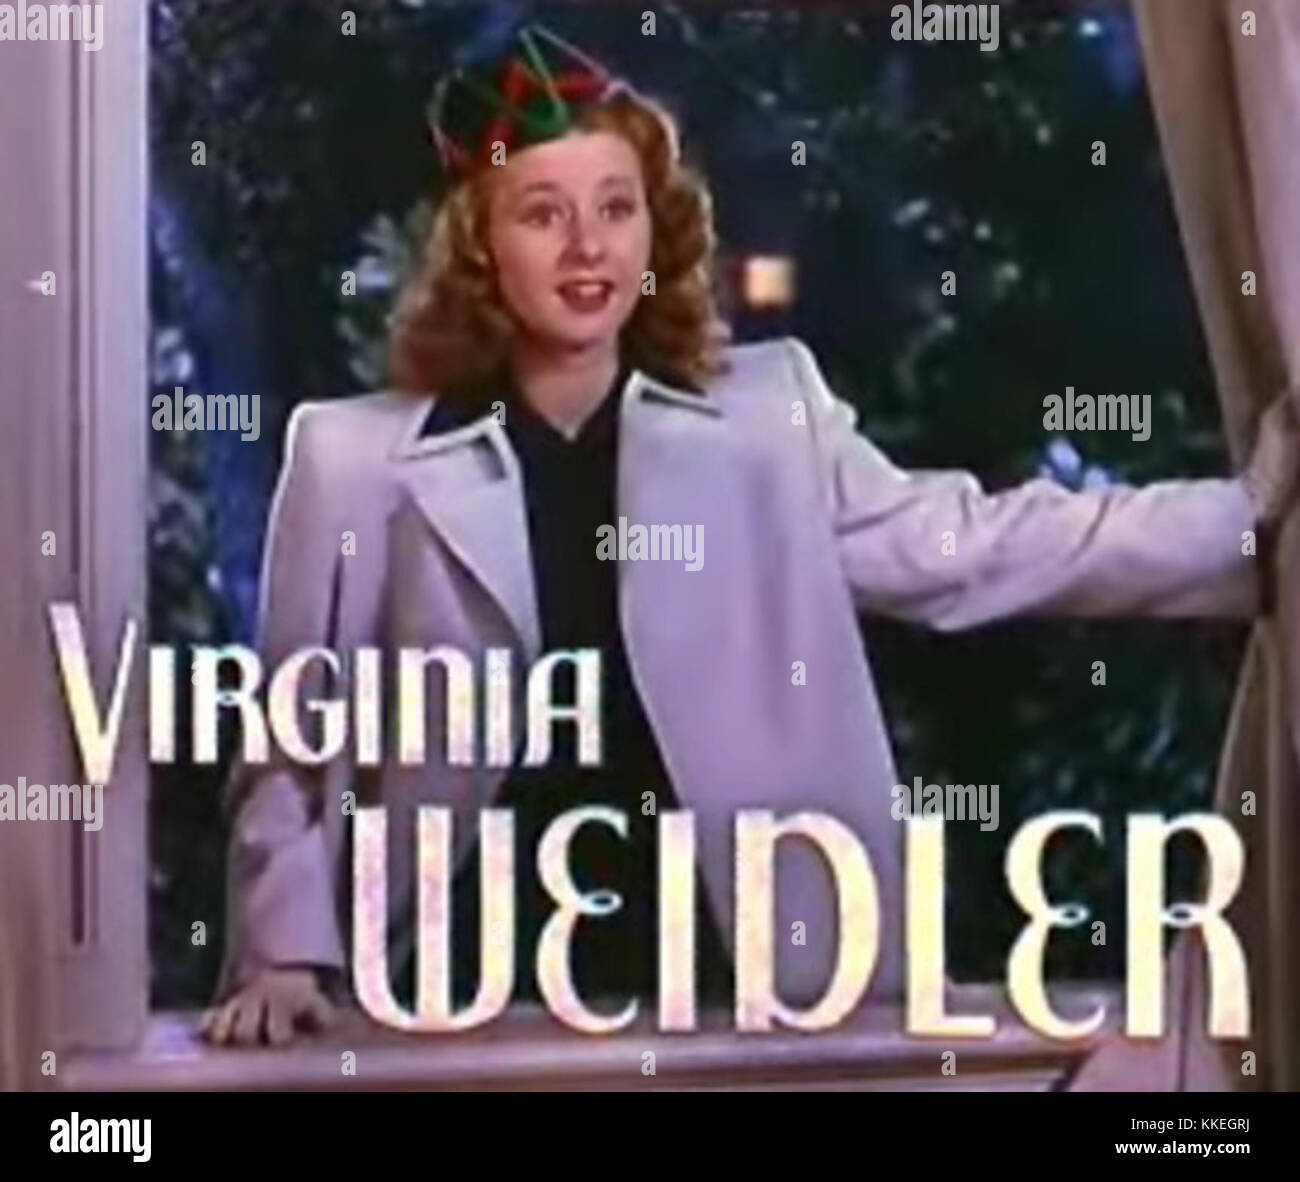 Virginia weidler movies